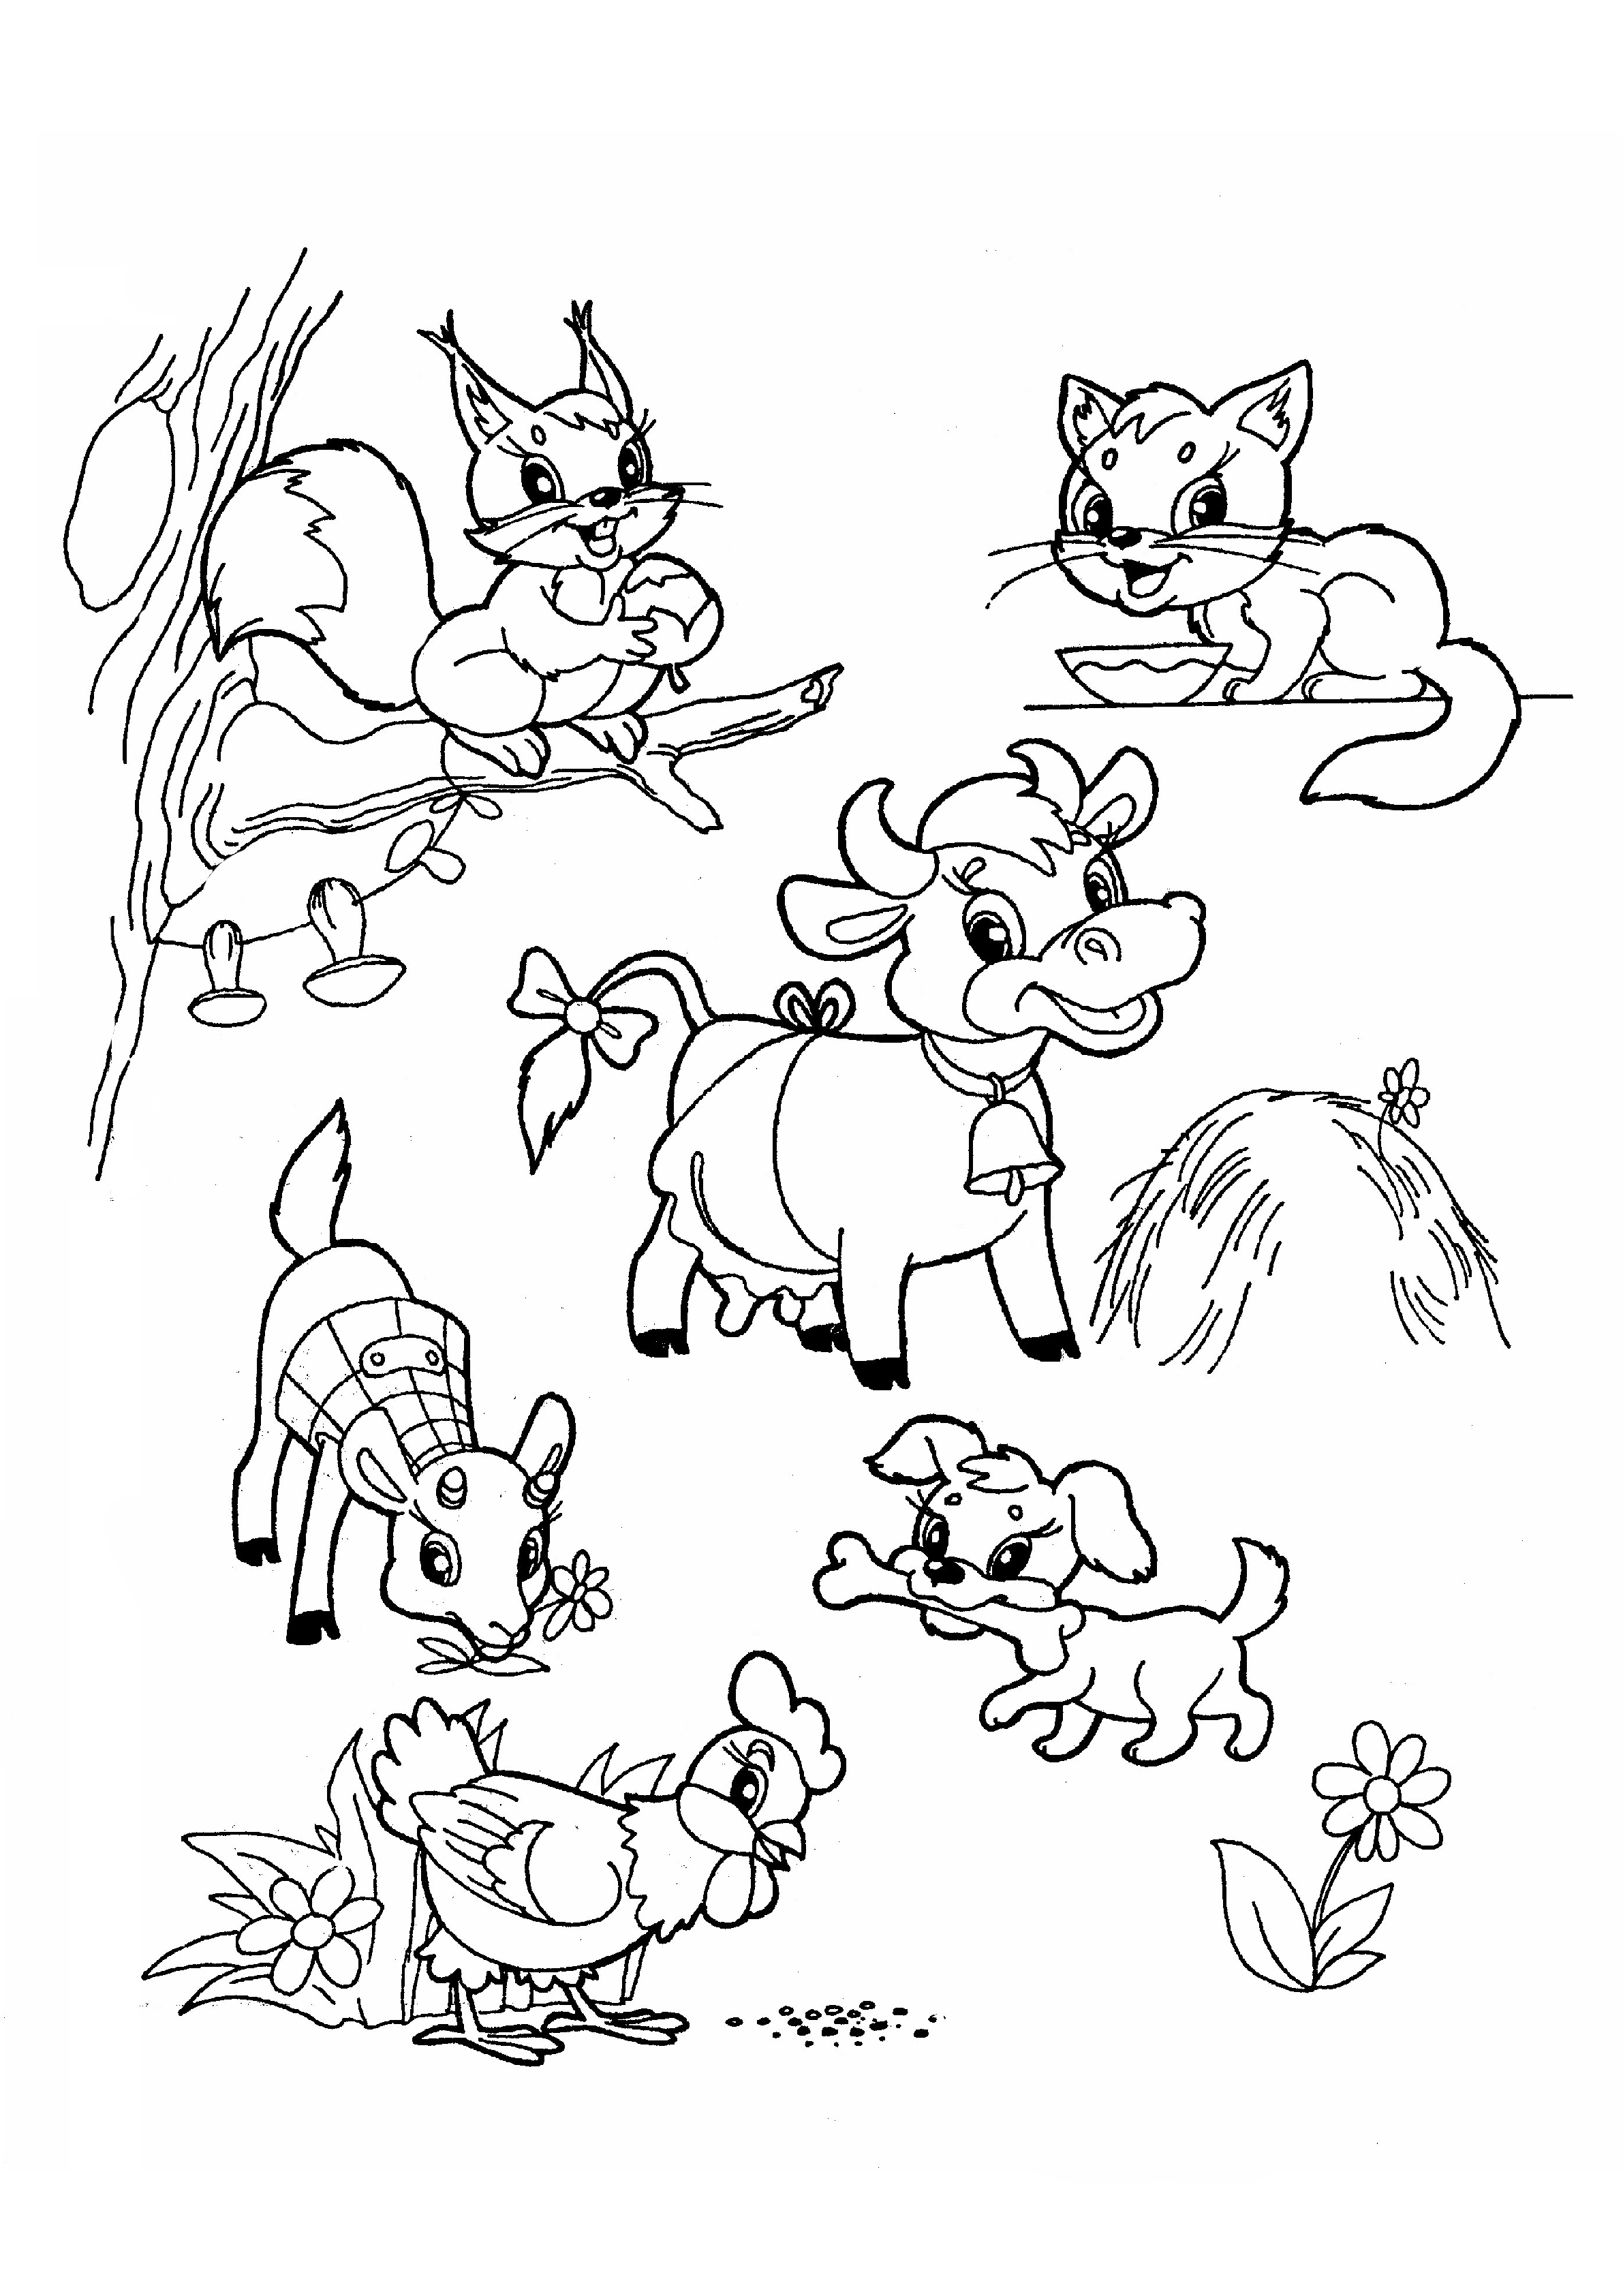 Распечатать раскраску зверей. Раскраски. Животные. Картинки для раскрашивания животные. Рисунки животных для детей. Раскраска животных для малышей.